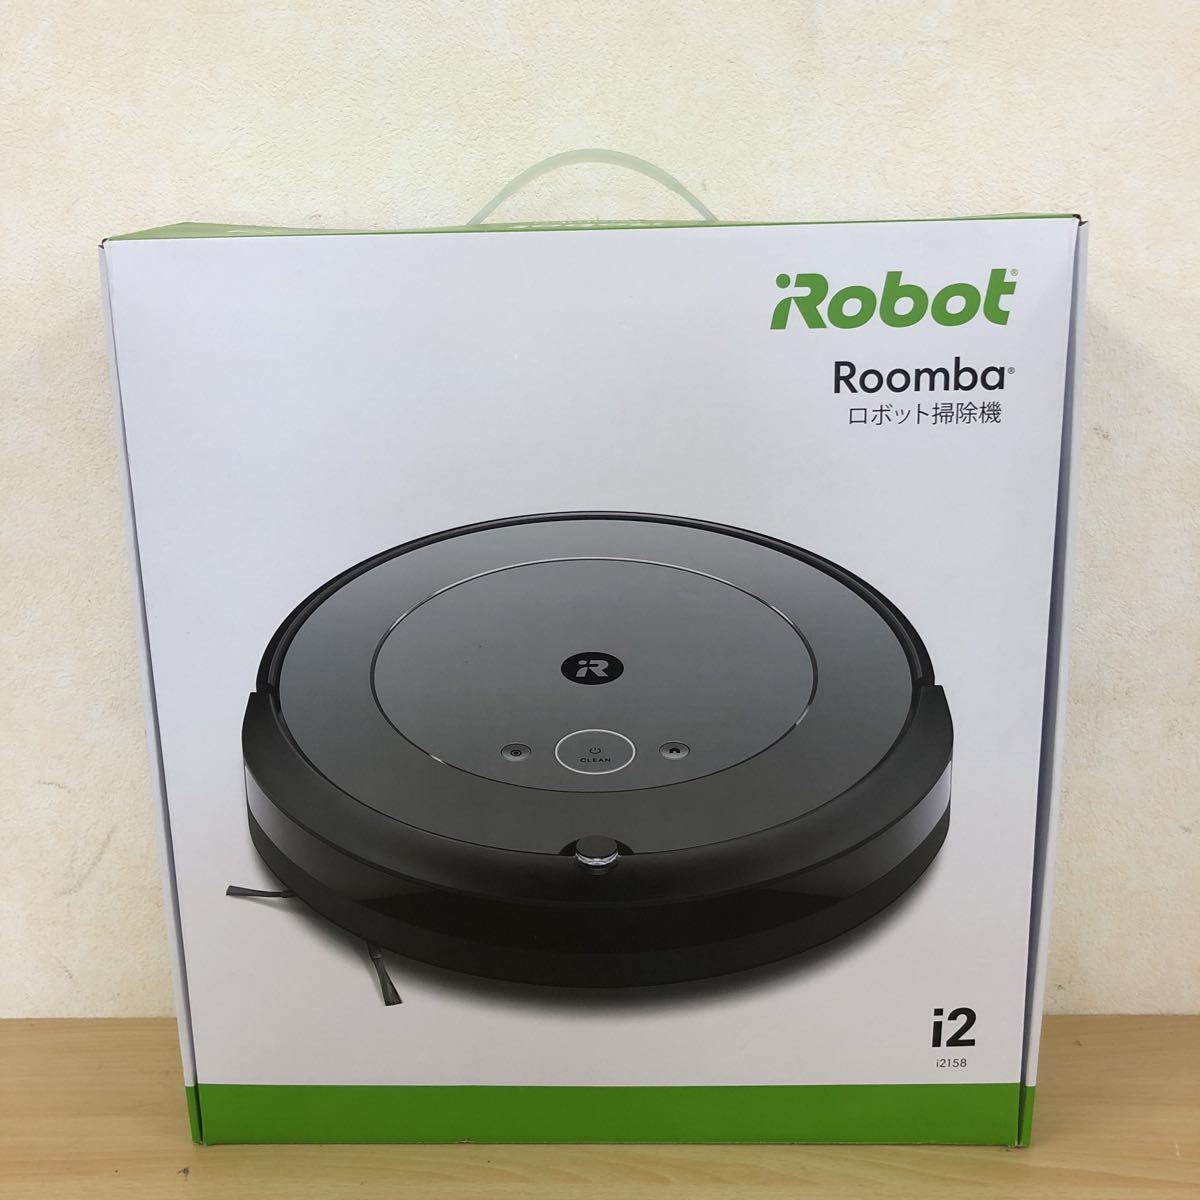 新品 iRobot Roomba i2 RVD-Y1 ロボット掃除機 i215860 アイロボット